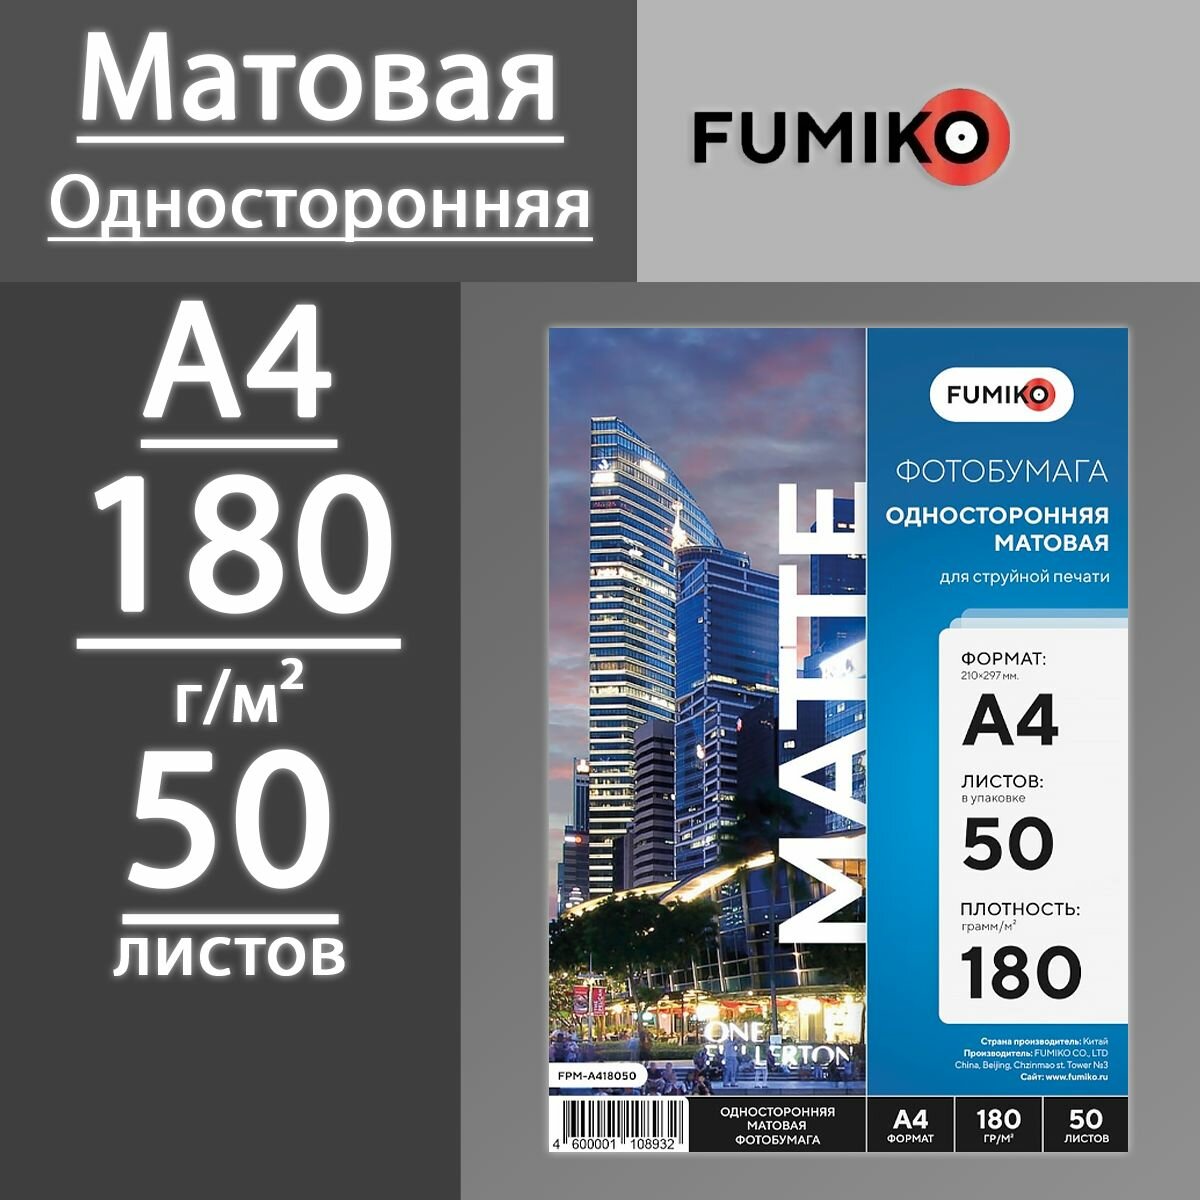 Фотобумага FUMIKO матовая односторонняя 180 г, А4, 50 листов